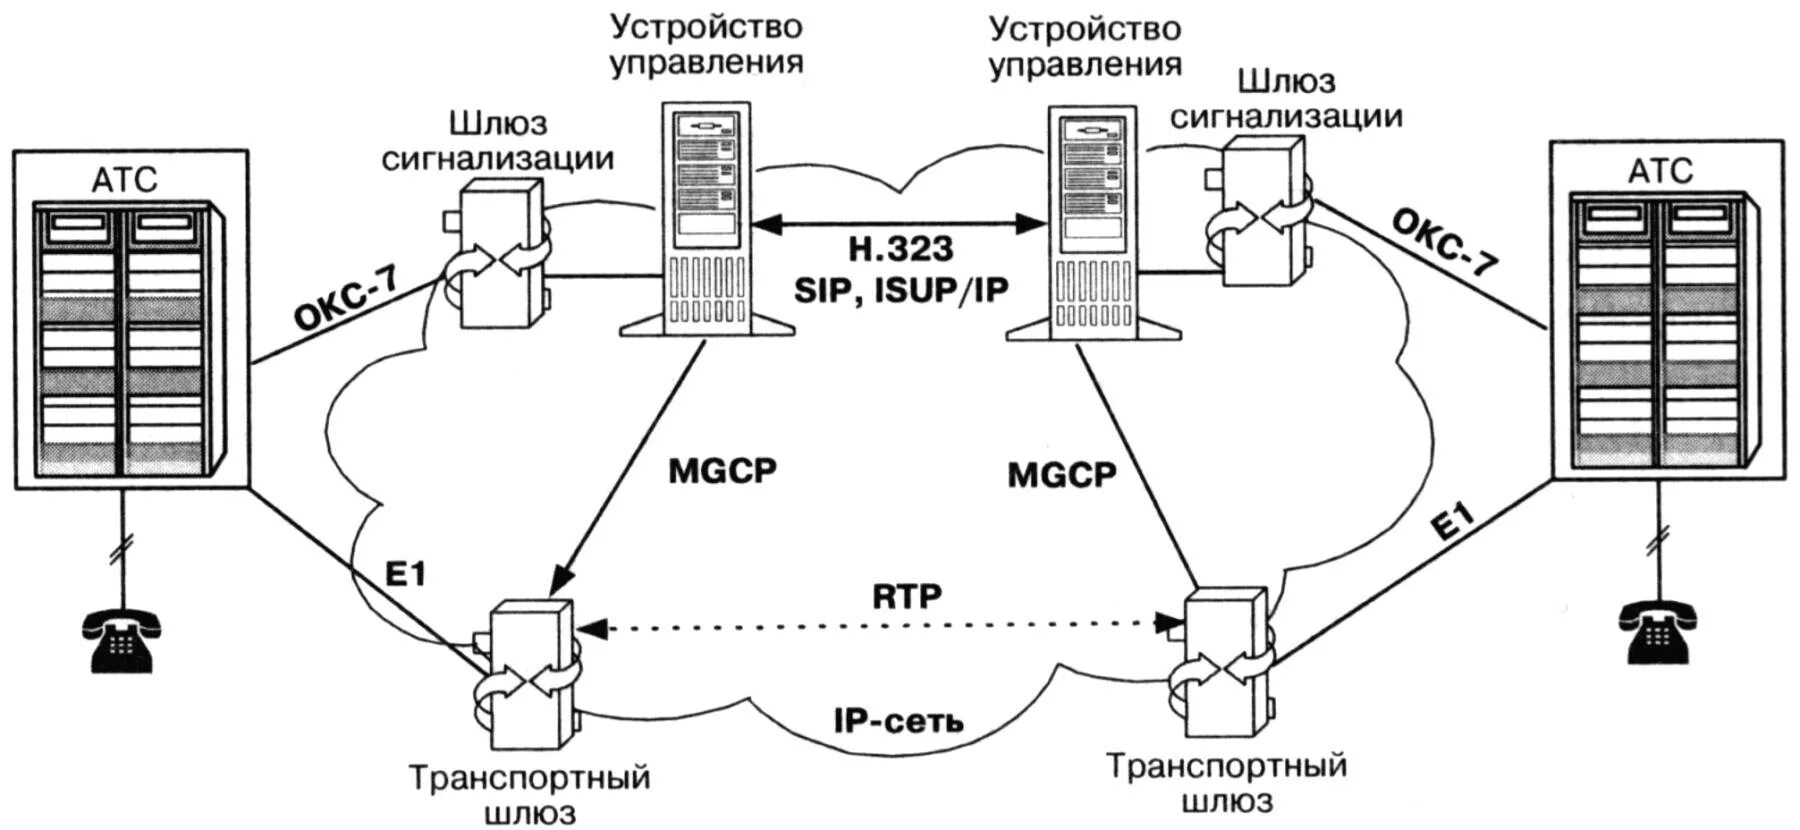 Шлюз связи. Протокол управления шлюзом Megaco/h.248. Протоколы управления MGCP, H.248. Шлюз IP телефонии схема. Обозначение VOIP шлюза на схеме.